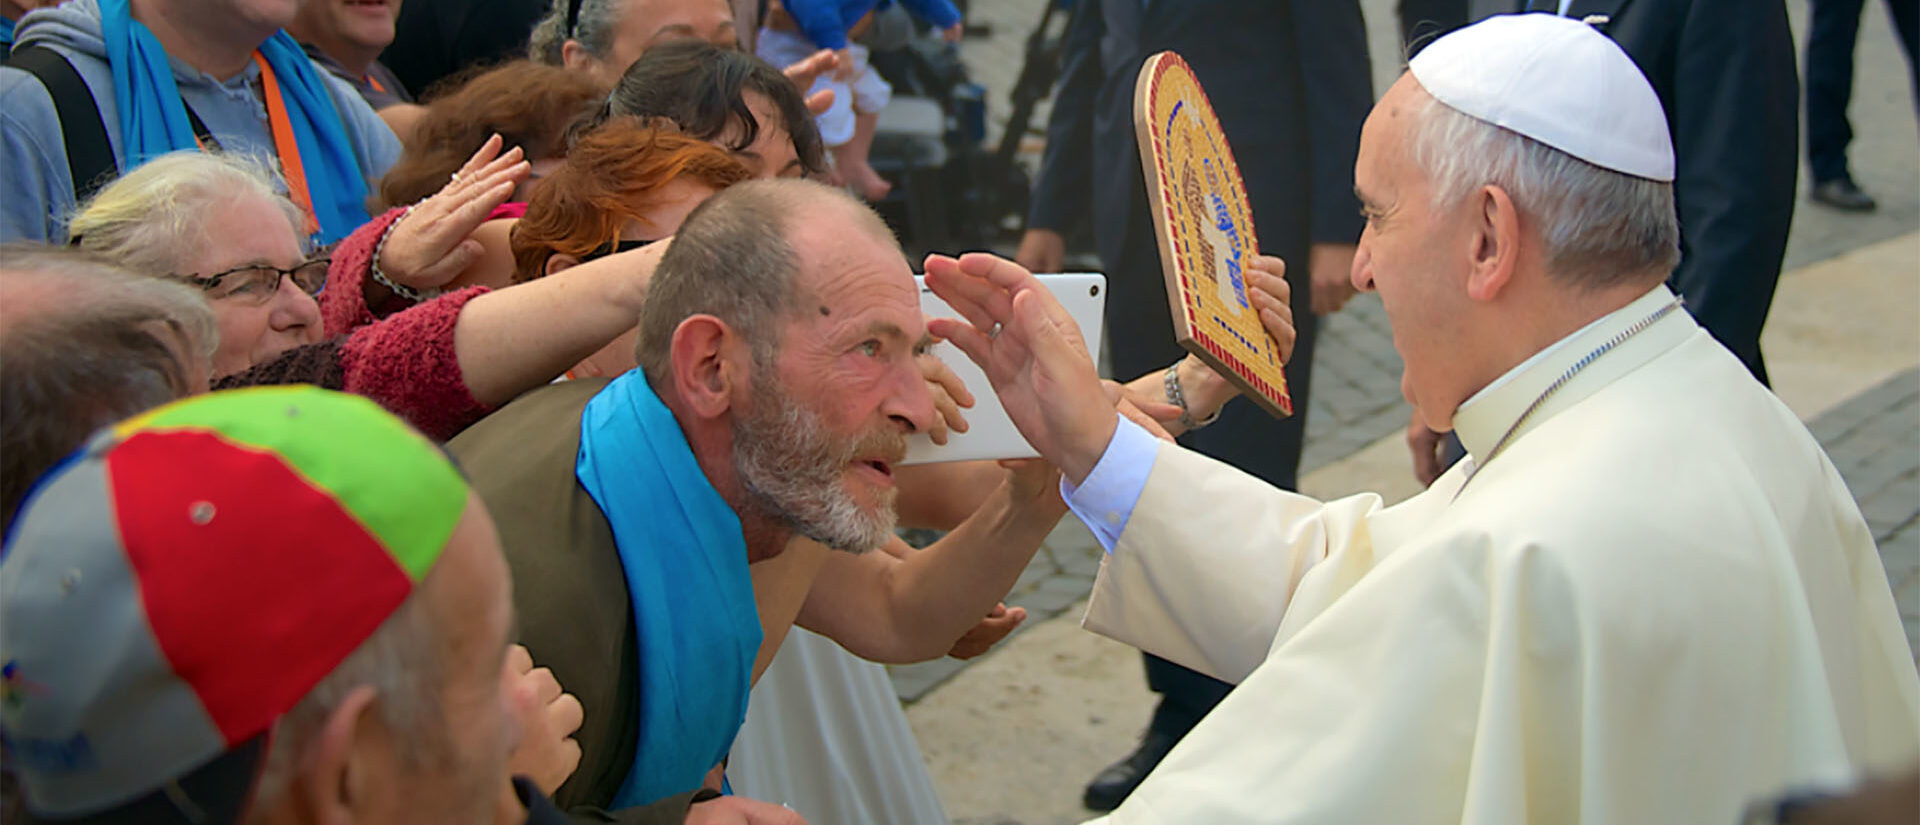 Comment l'Eglise peut-elle atteindre les pauvres? | pèlerinage de Fratello © Fratello.org